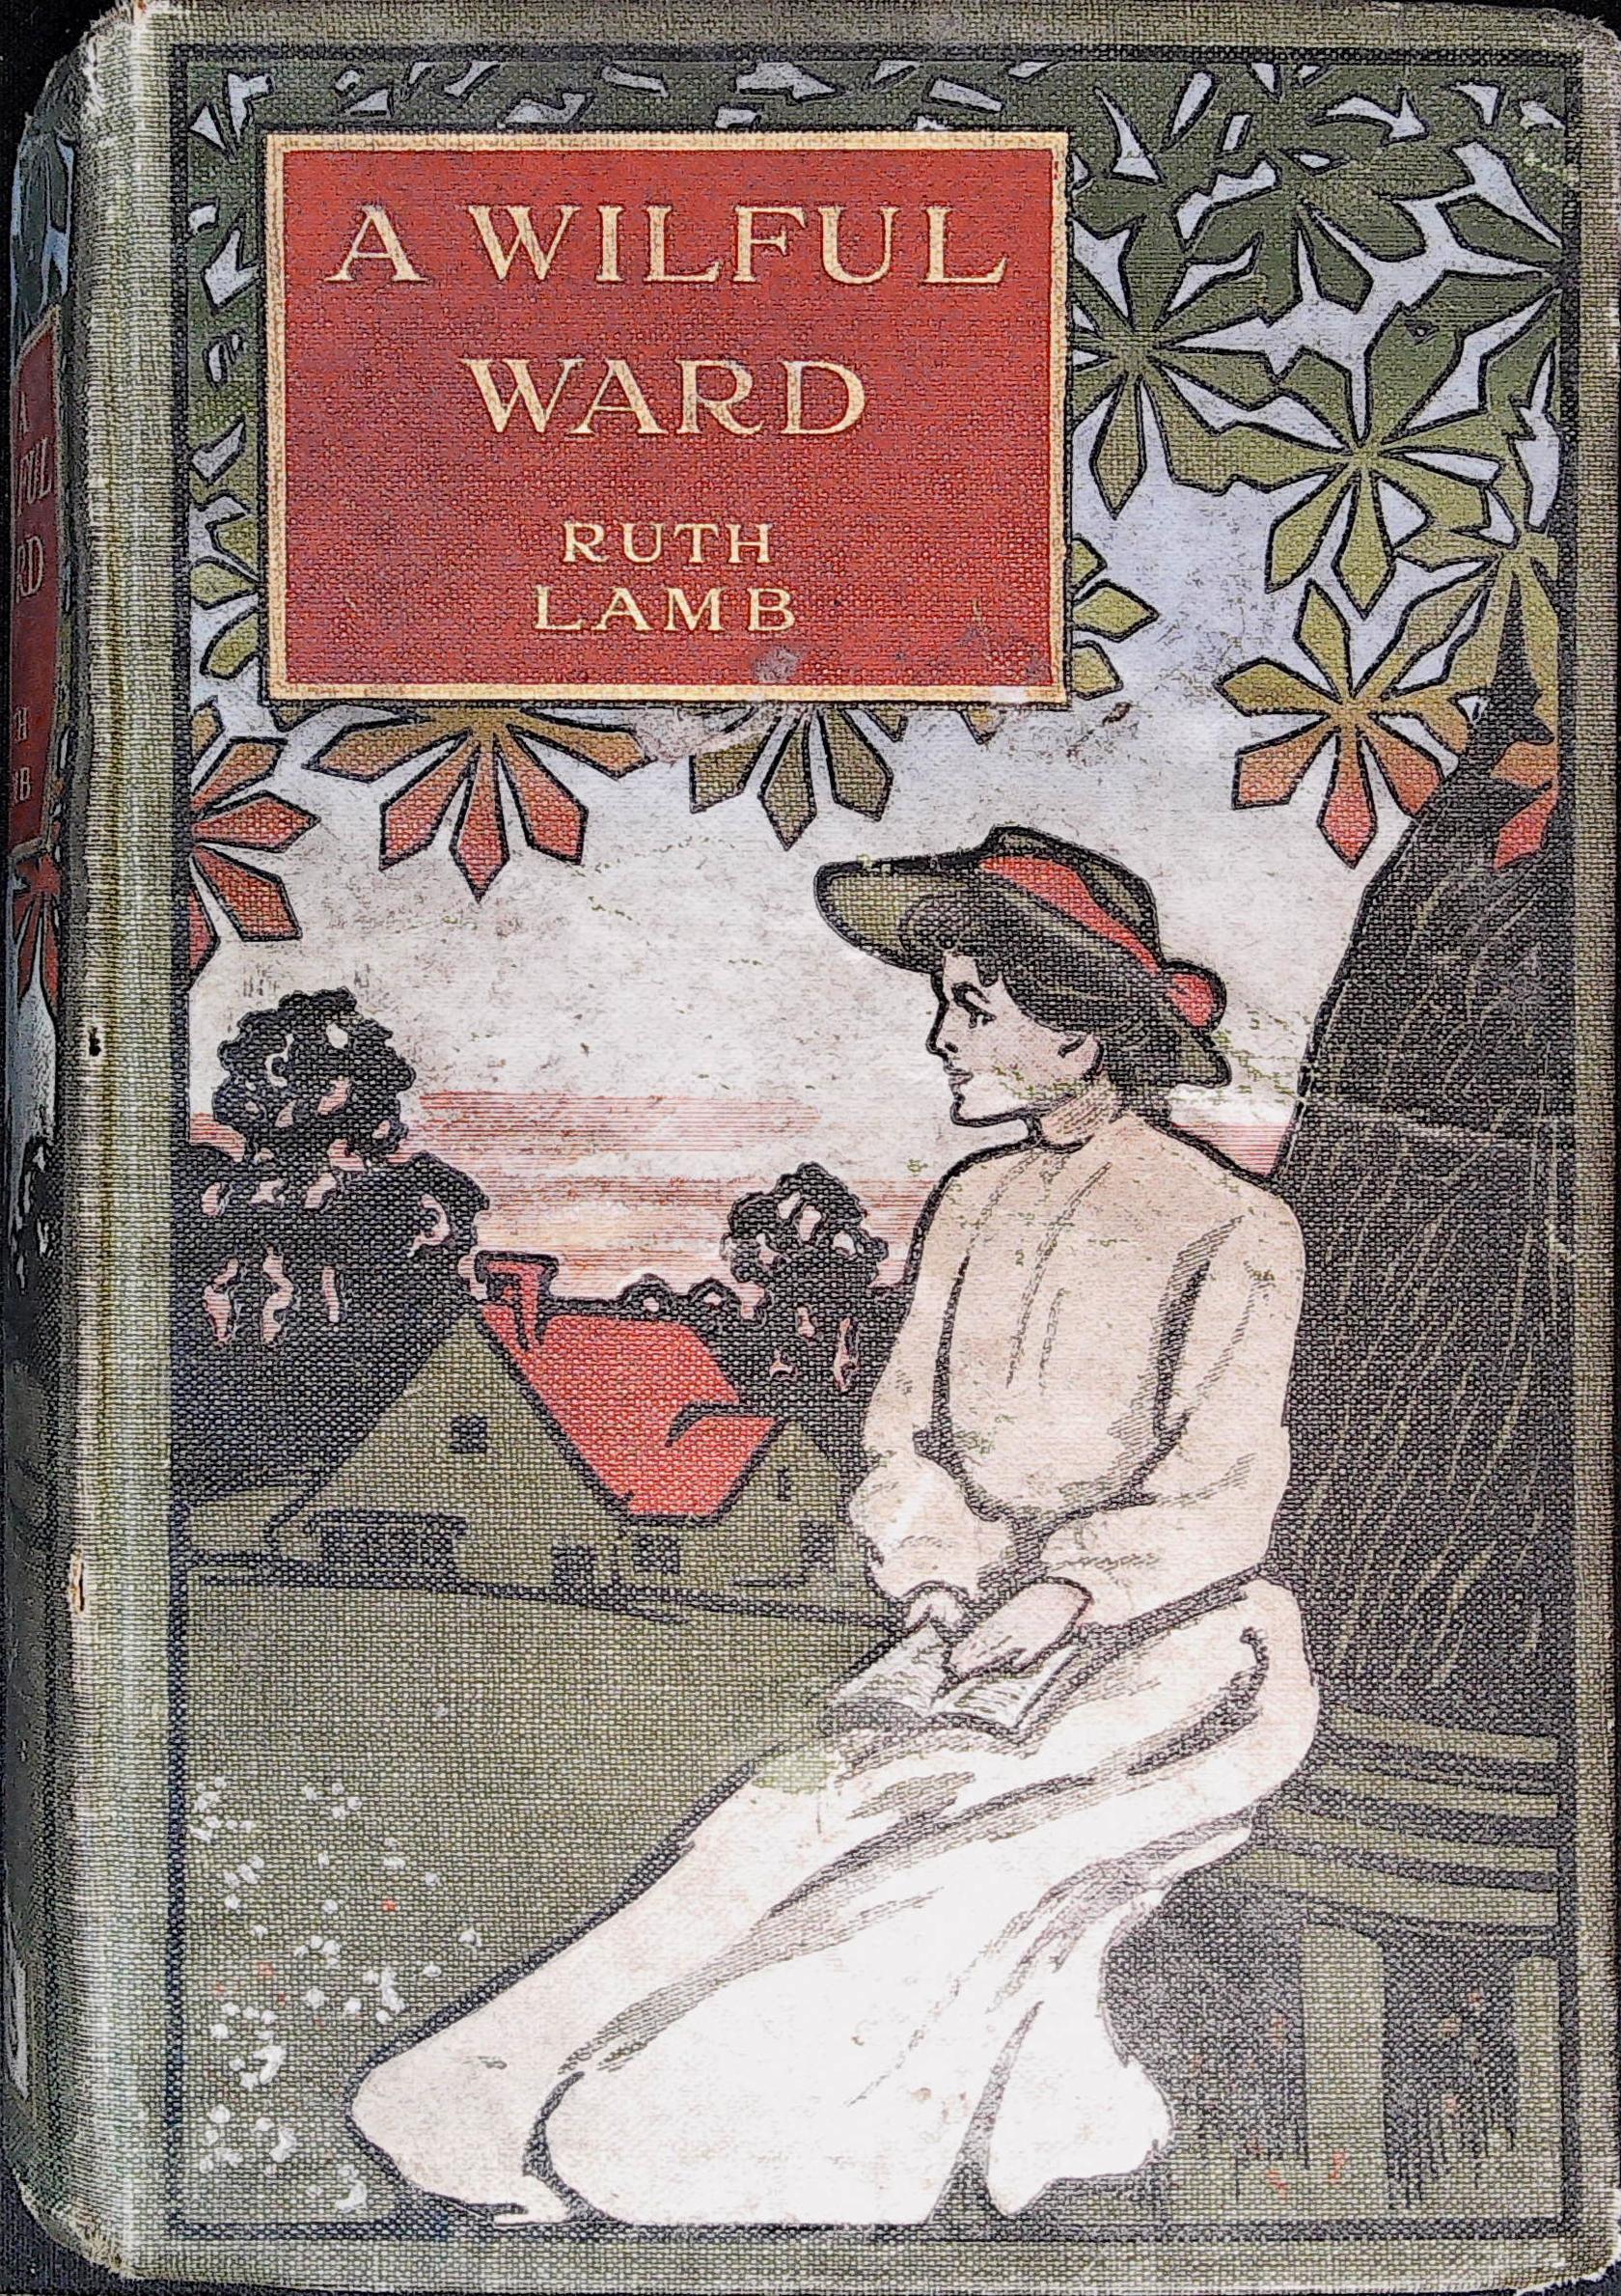 A Wilful Ward, by Ruth Lamb pic